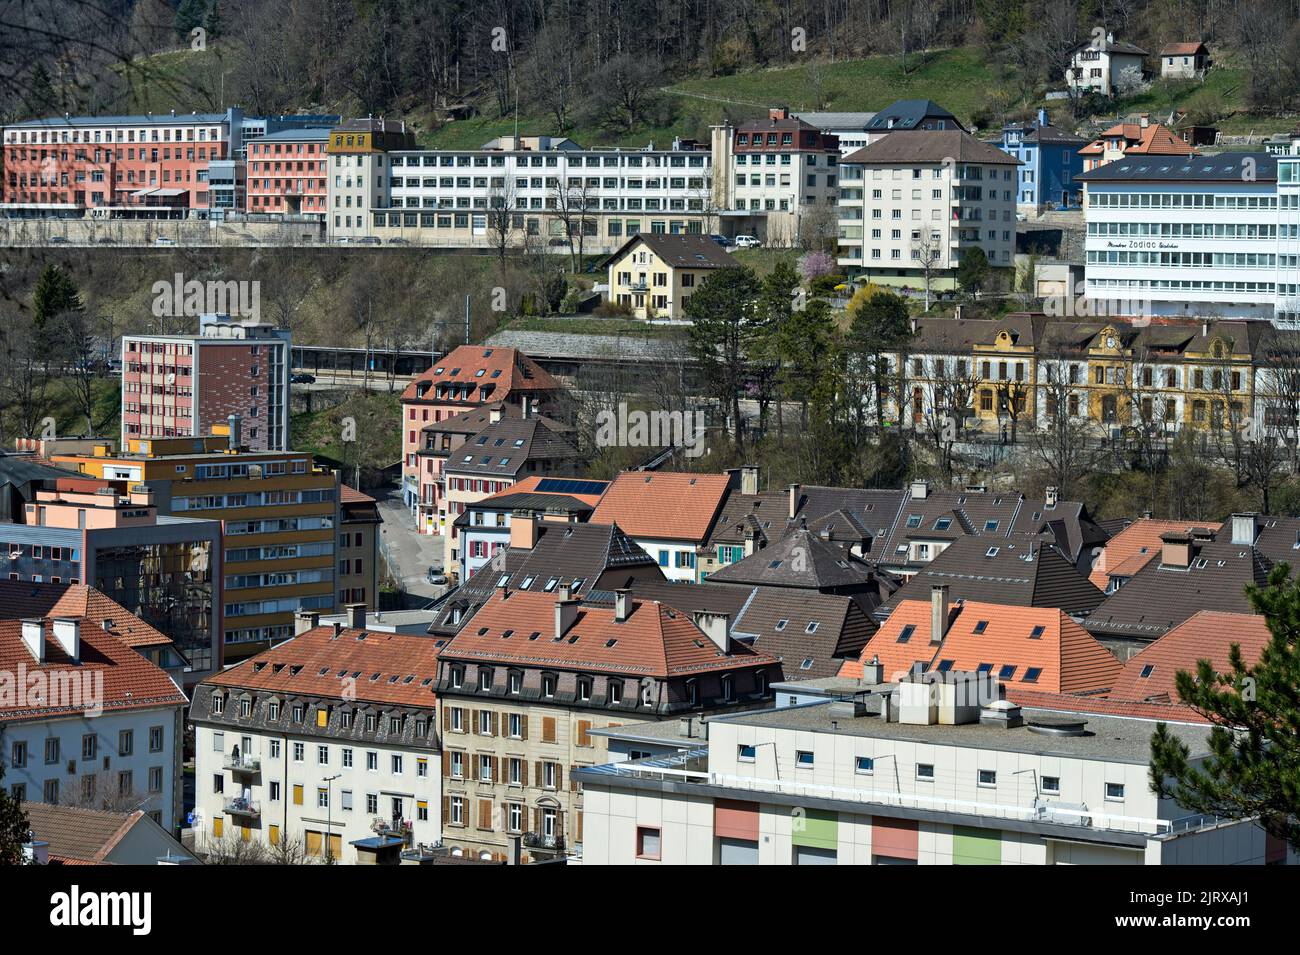 Case residenziali e impianti di produzione dell'industria orologiera, paesaggio urbano della città orologiera di le Locle, Svizzera Foto Stock